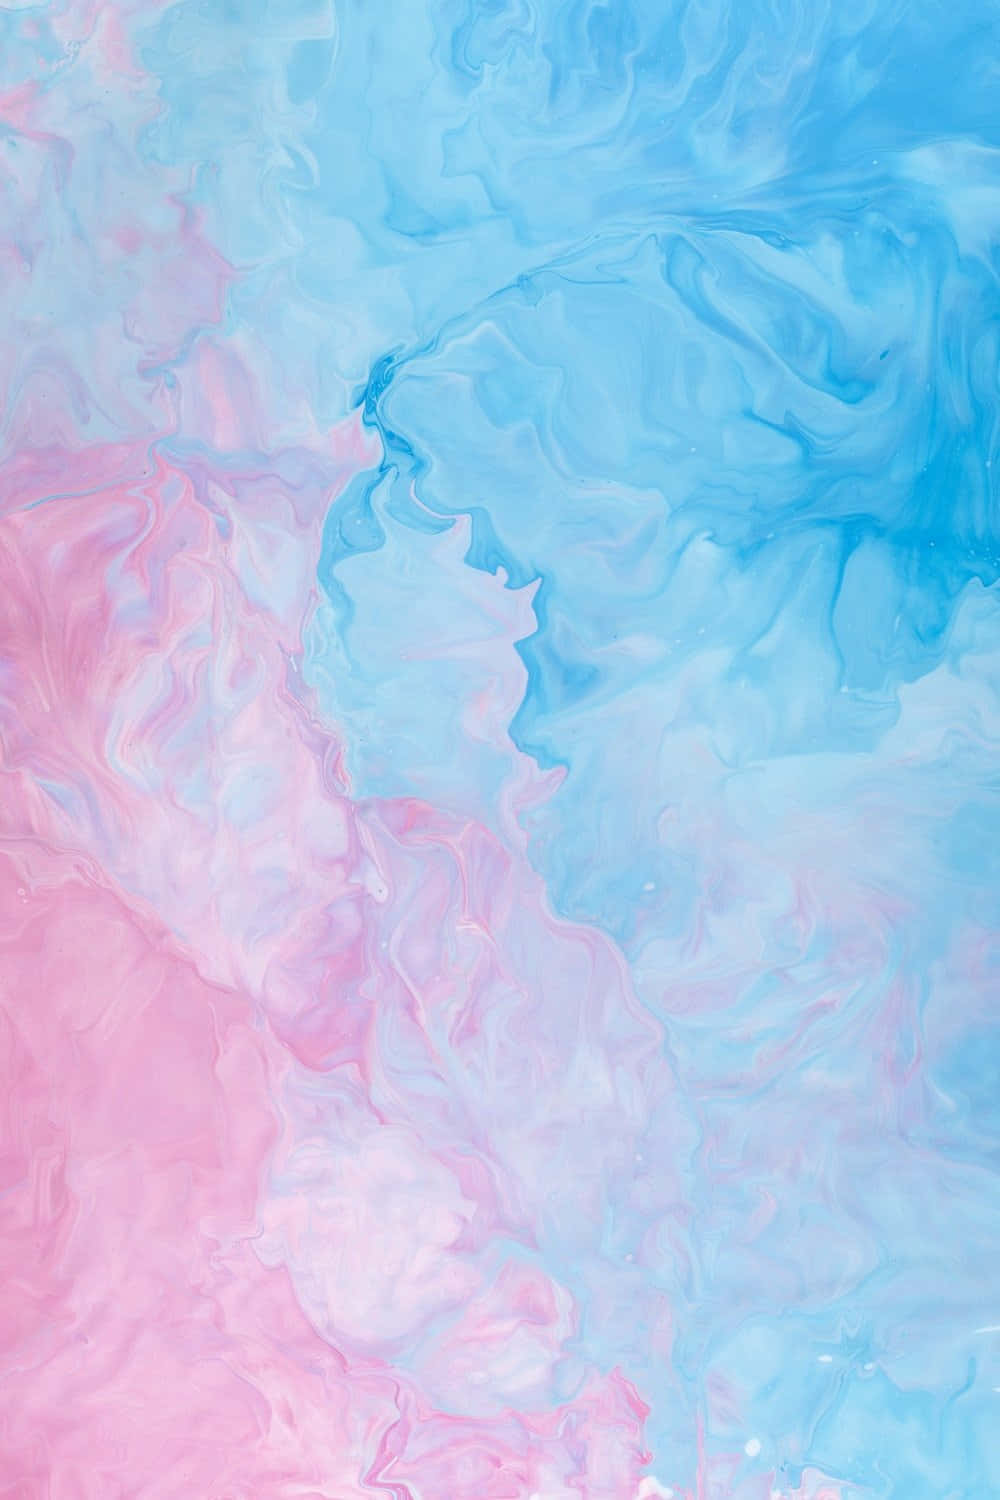 Enbild Av En Drömsk Bakgrund Med Mjuka Pastellblå Och Rosa Nyanser. Wallpaper